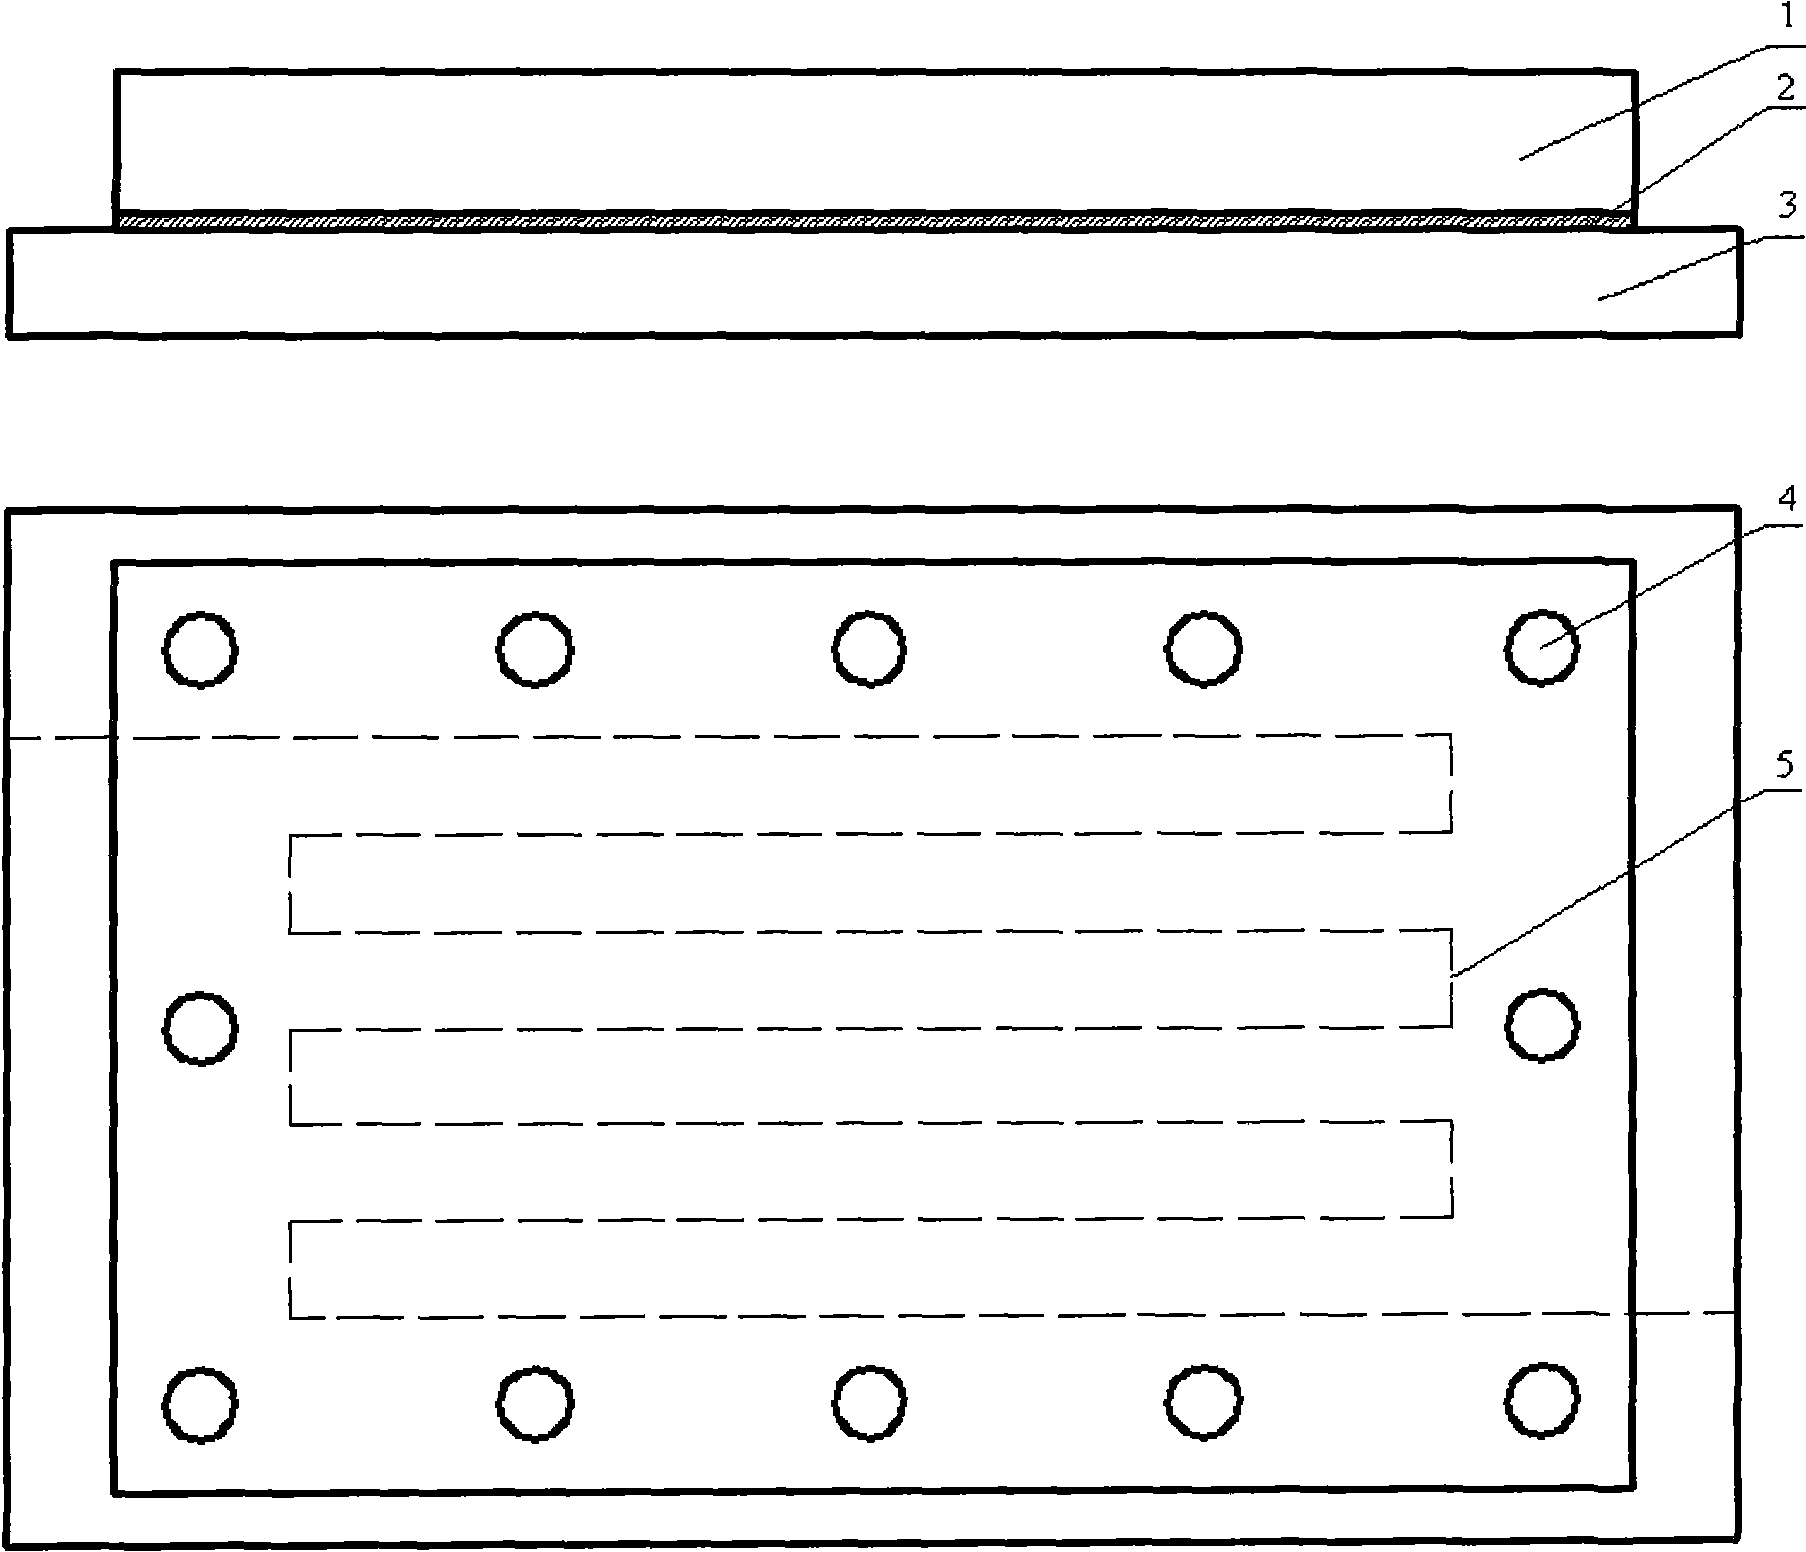 Design method of water-cooling radiator